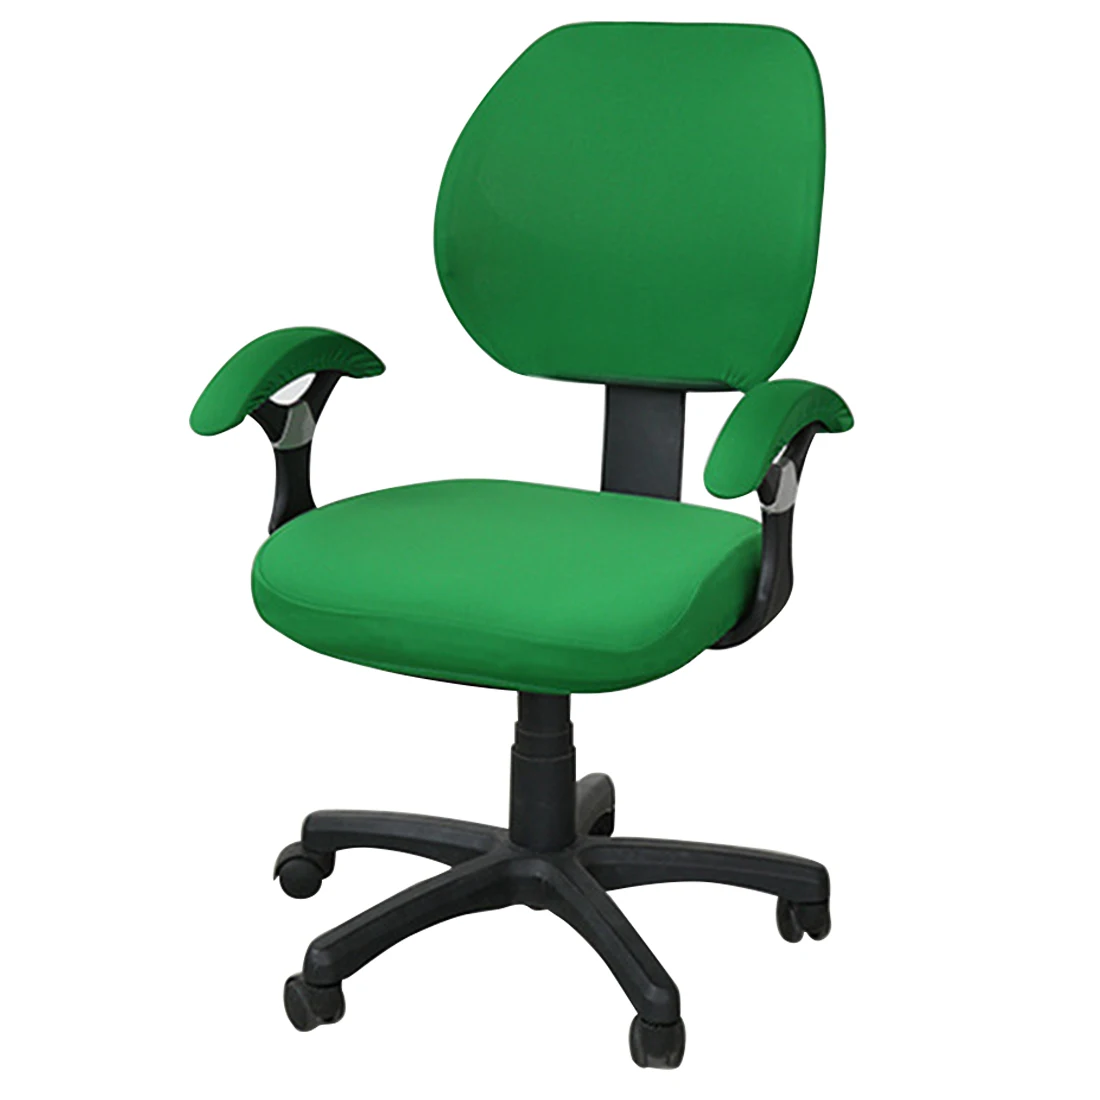 Эластичный офисный чехол на компьютерное кресло с боковой рукояткой чехол для кресла Recouvre шезлонг стрейч вращающийся чехол для кресла без стула - Цвет: green